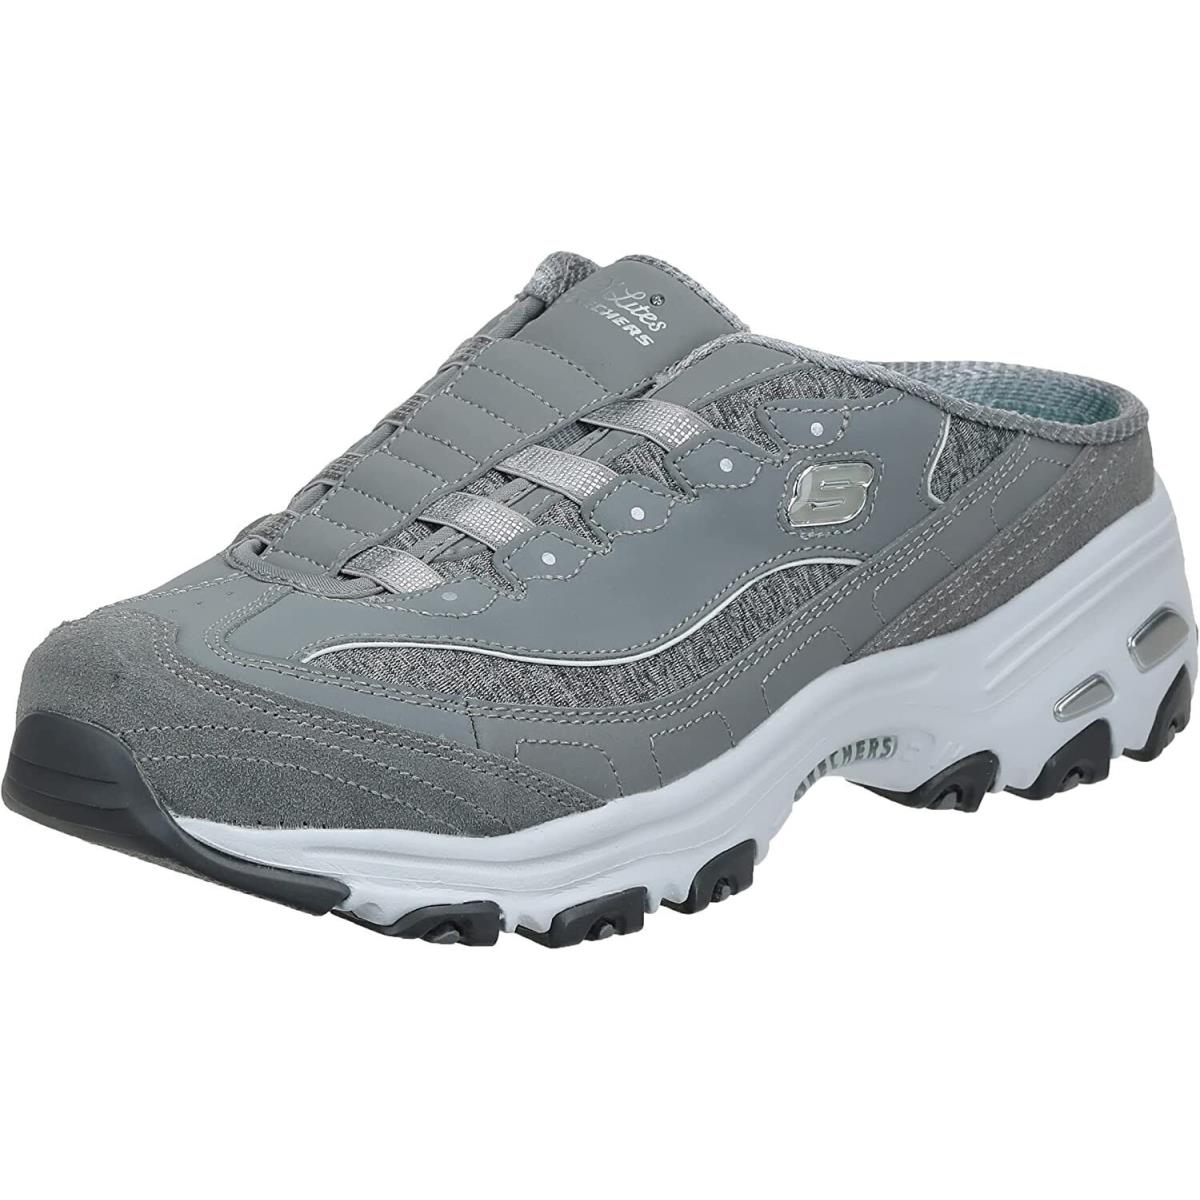 Skechers D`lites Women`s Comfort Slip-on Shoes Mule Memory Foam Sport Sneakers Gray/White